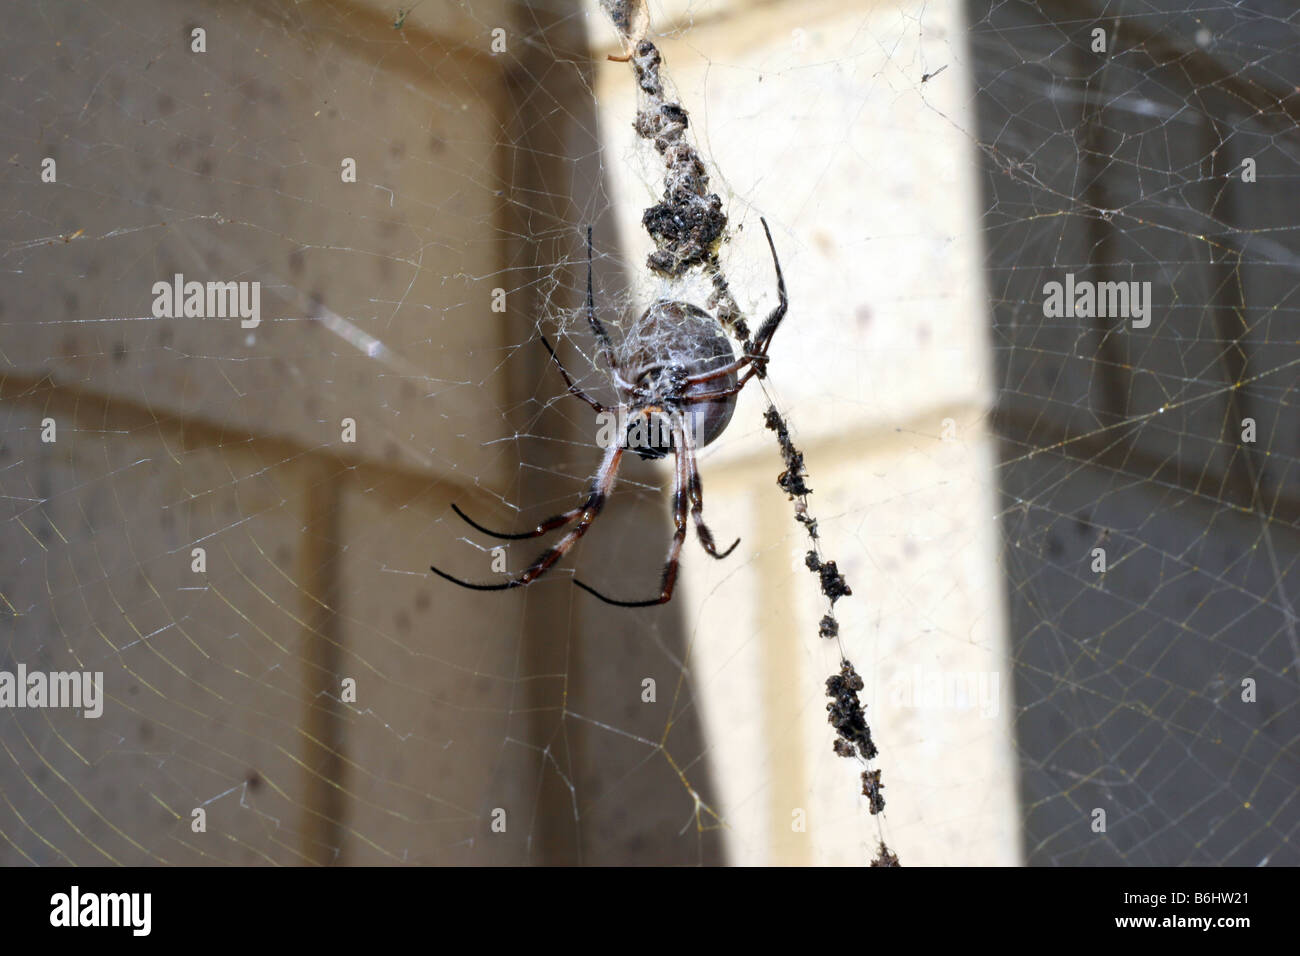 Grosse araignée australienne Banque D'Images